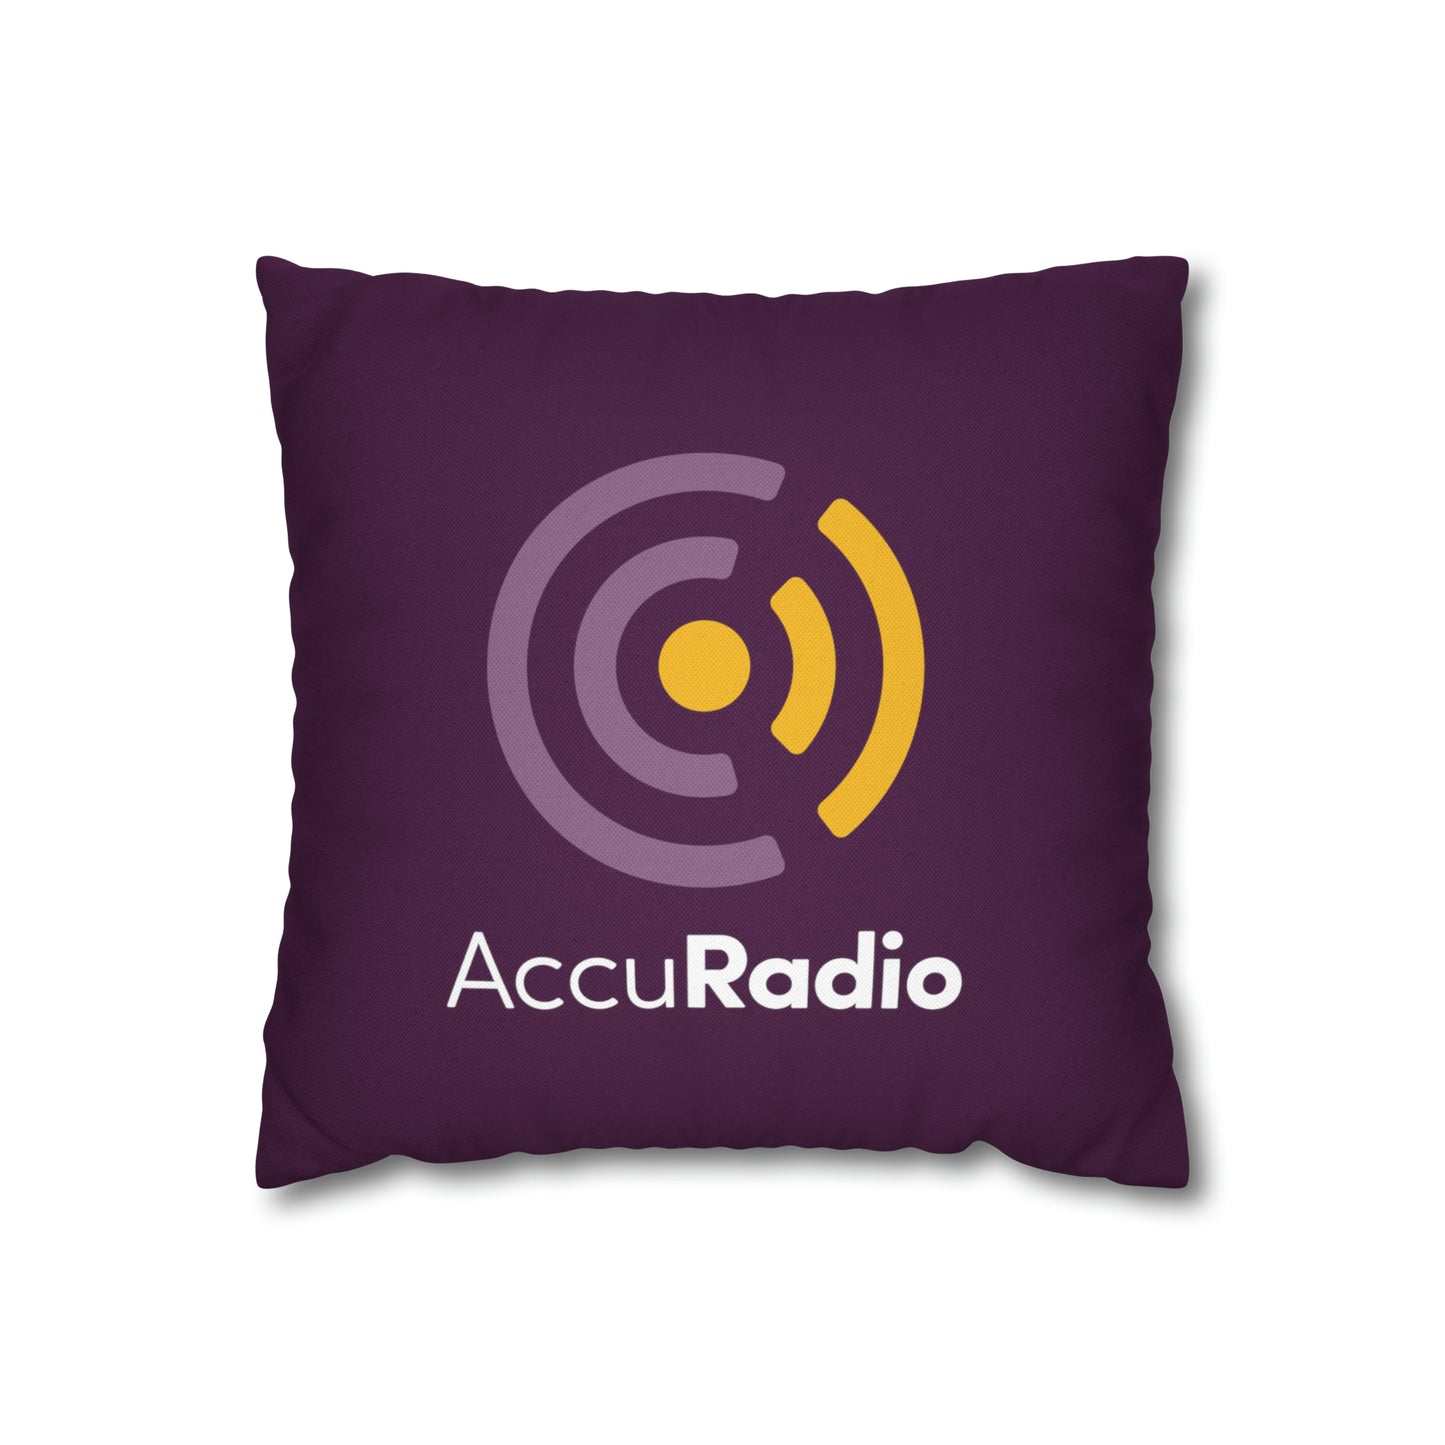 Classic AccuRadio square pillow case